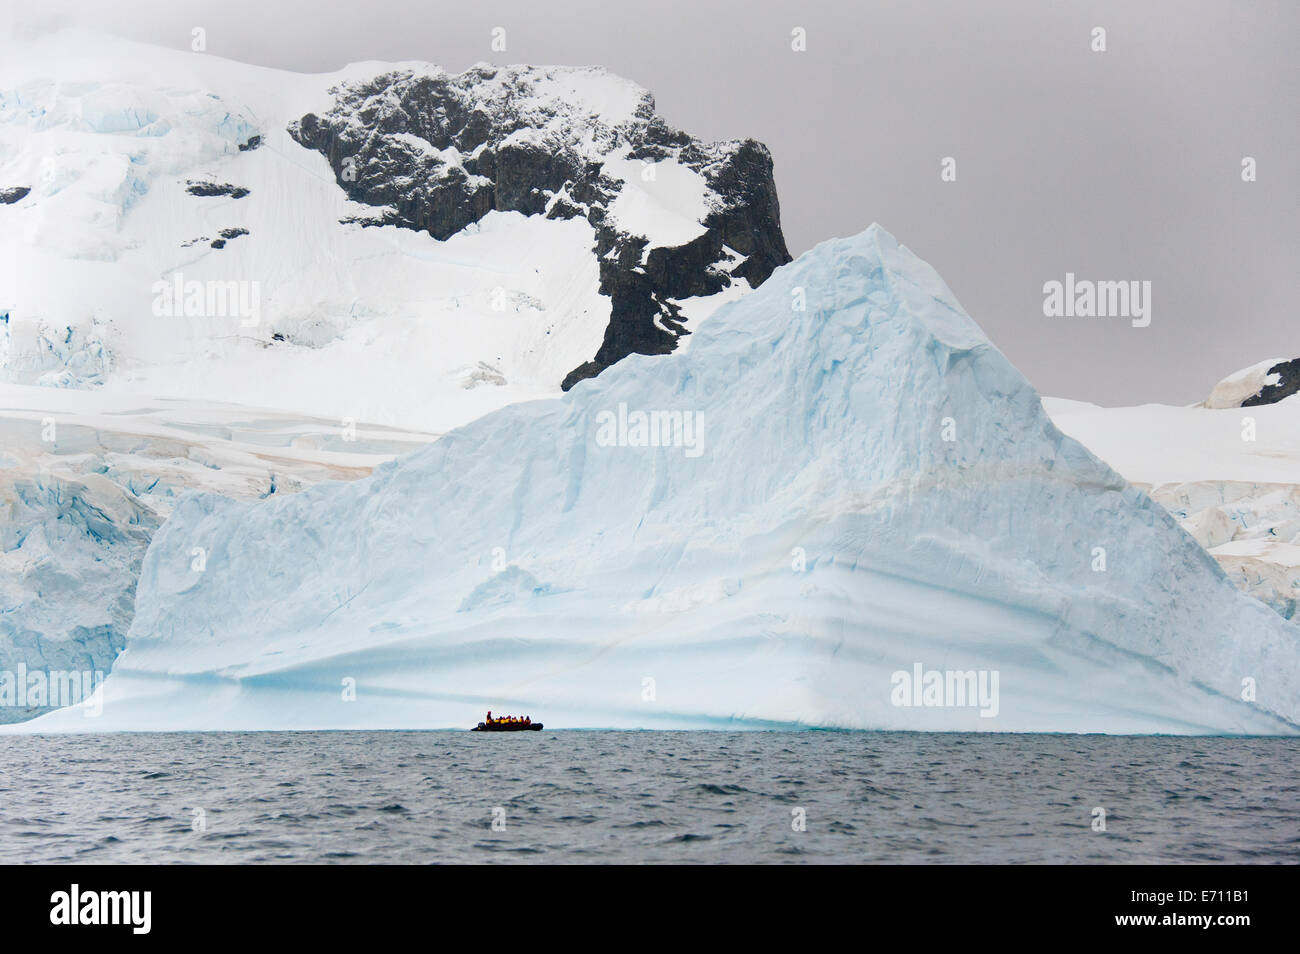 Menschen in kleinen inflatible Zodiac Rib-Boote vorbei an Eisberge und Eisschollen auf dem ruhigen Wasser Stockfoto